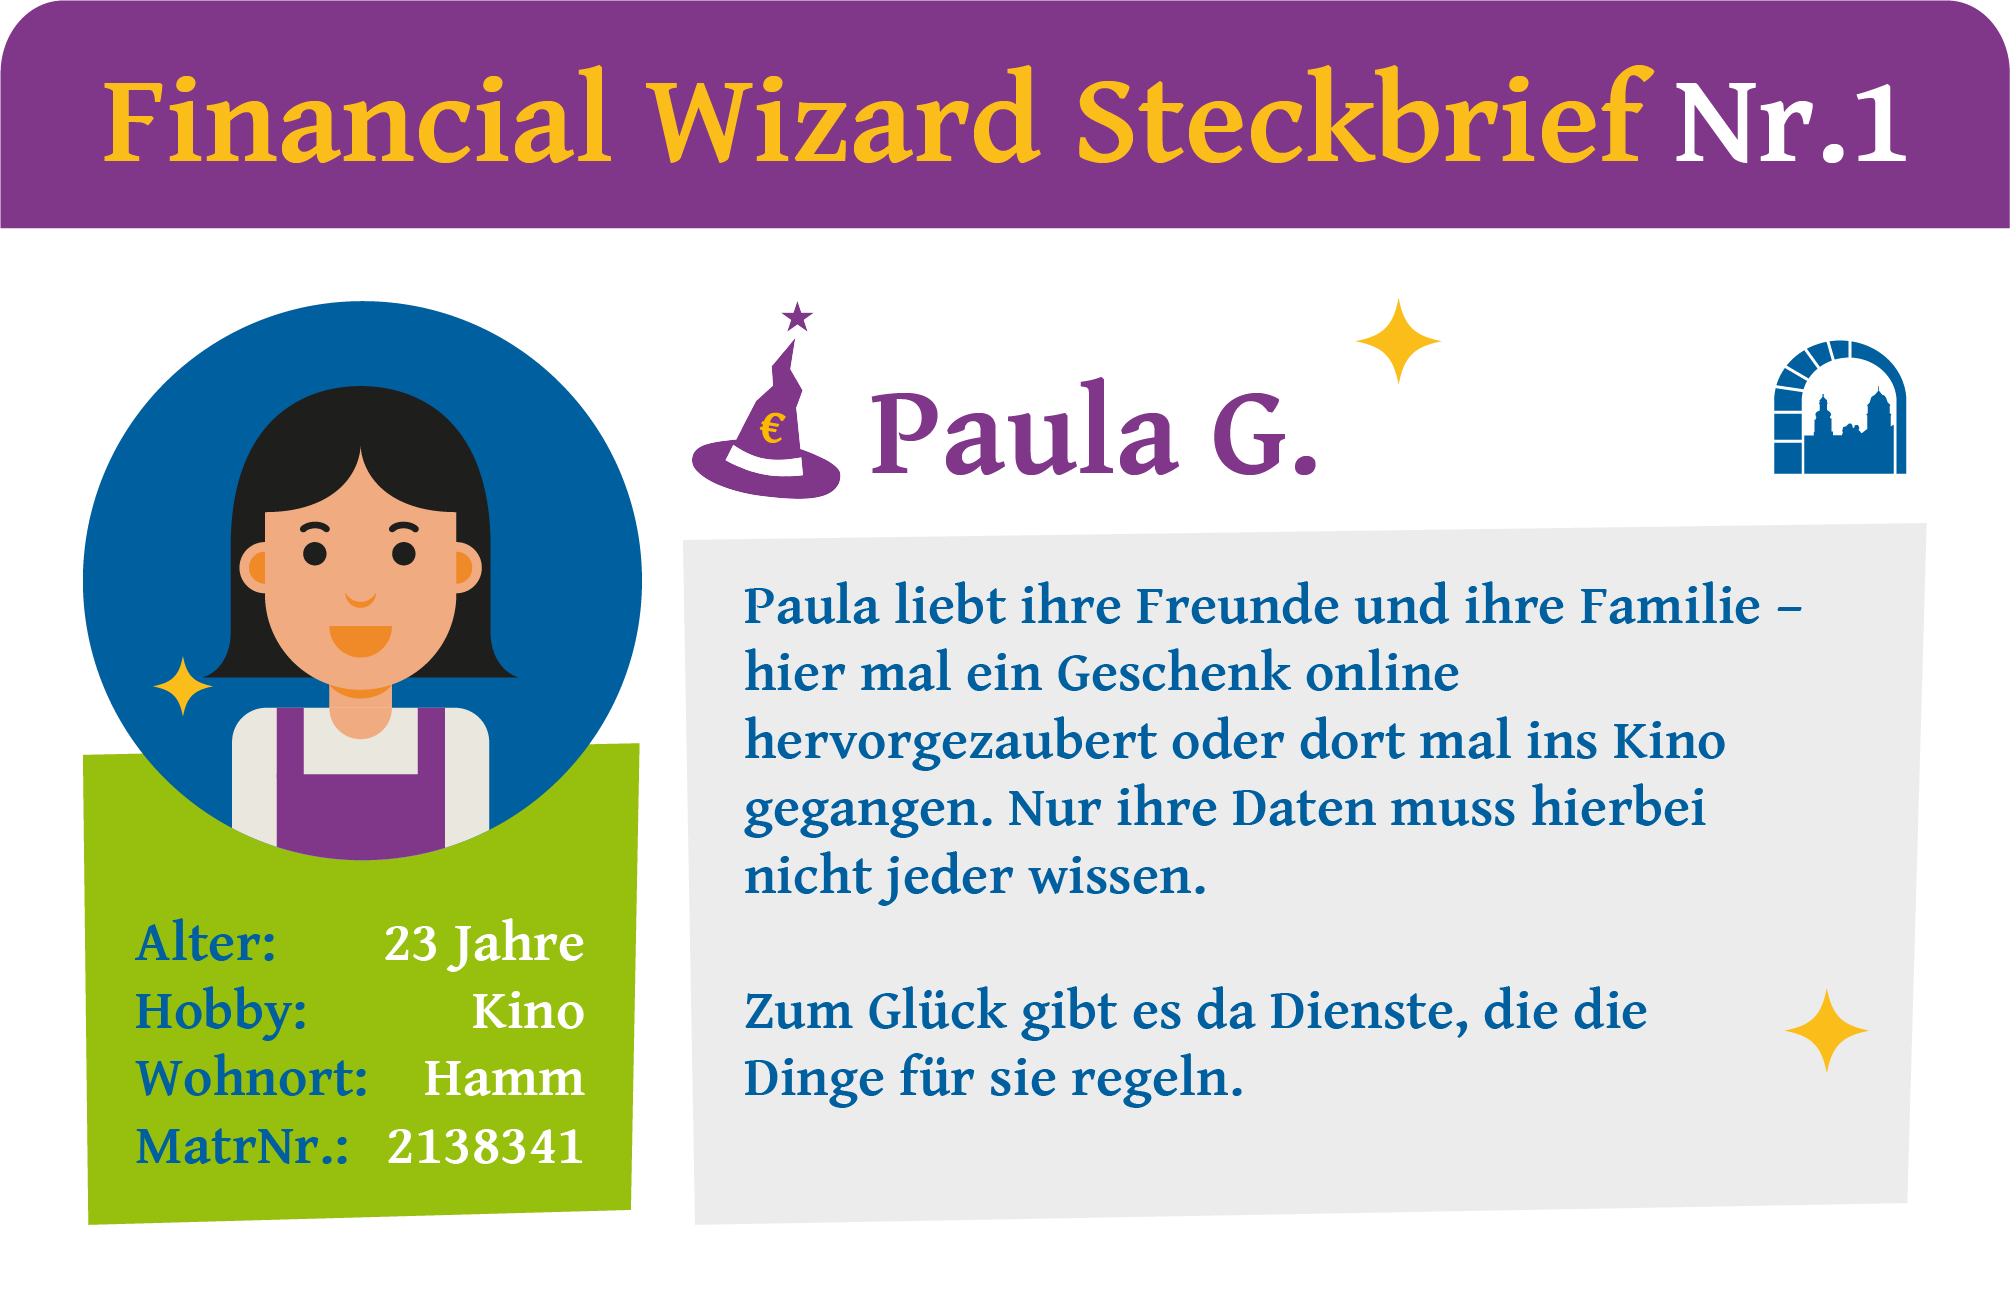 Steckbrief Nr. 1 zur Financial Wizard Challenge 4